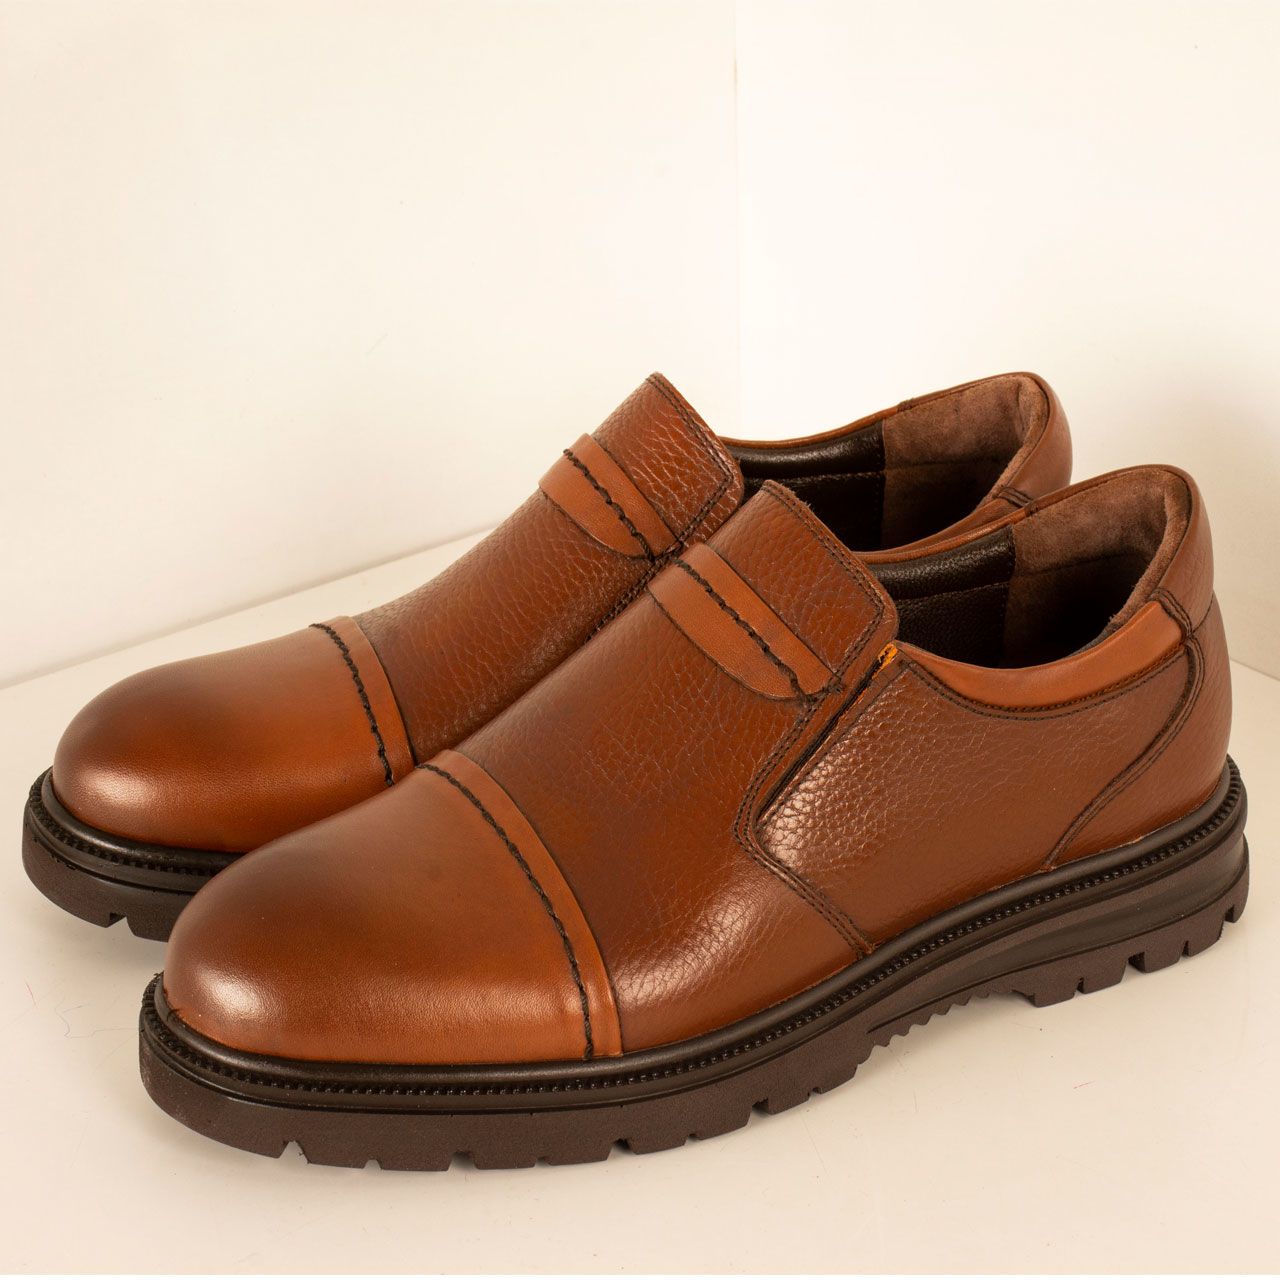  کفش روزمره مردانه پارینه چرم مدل SHO199-1 -  - 5